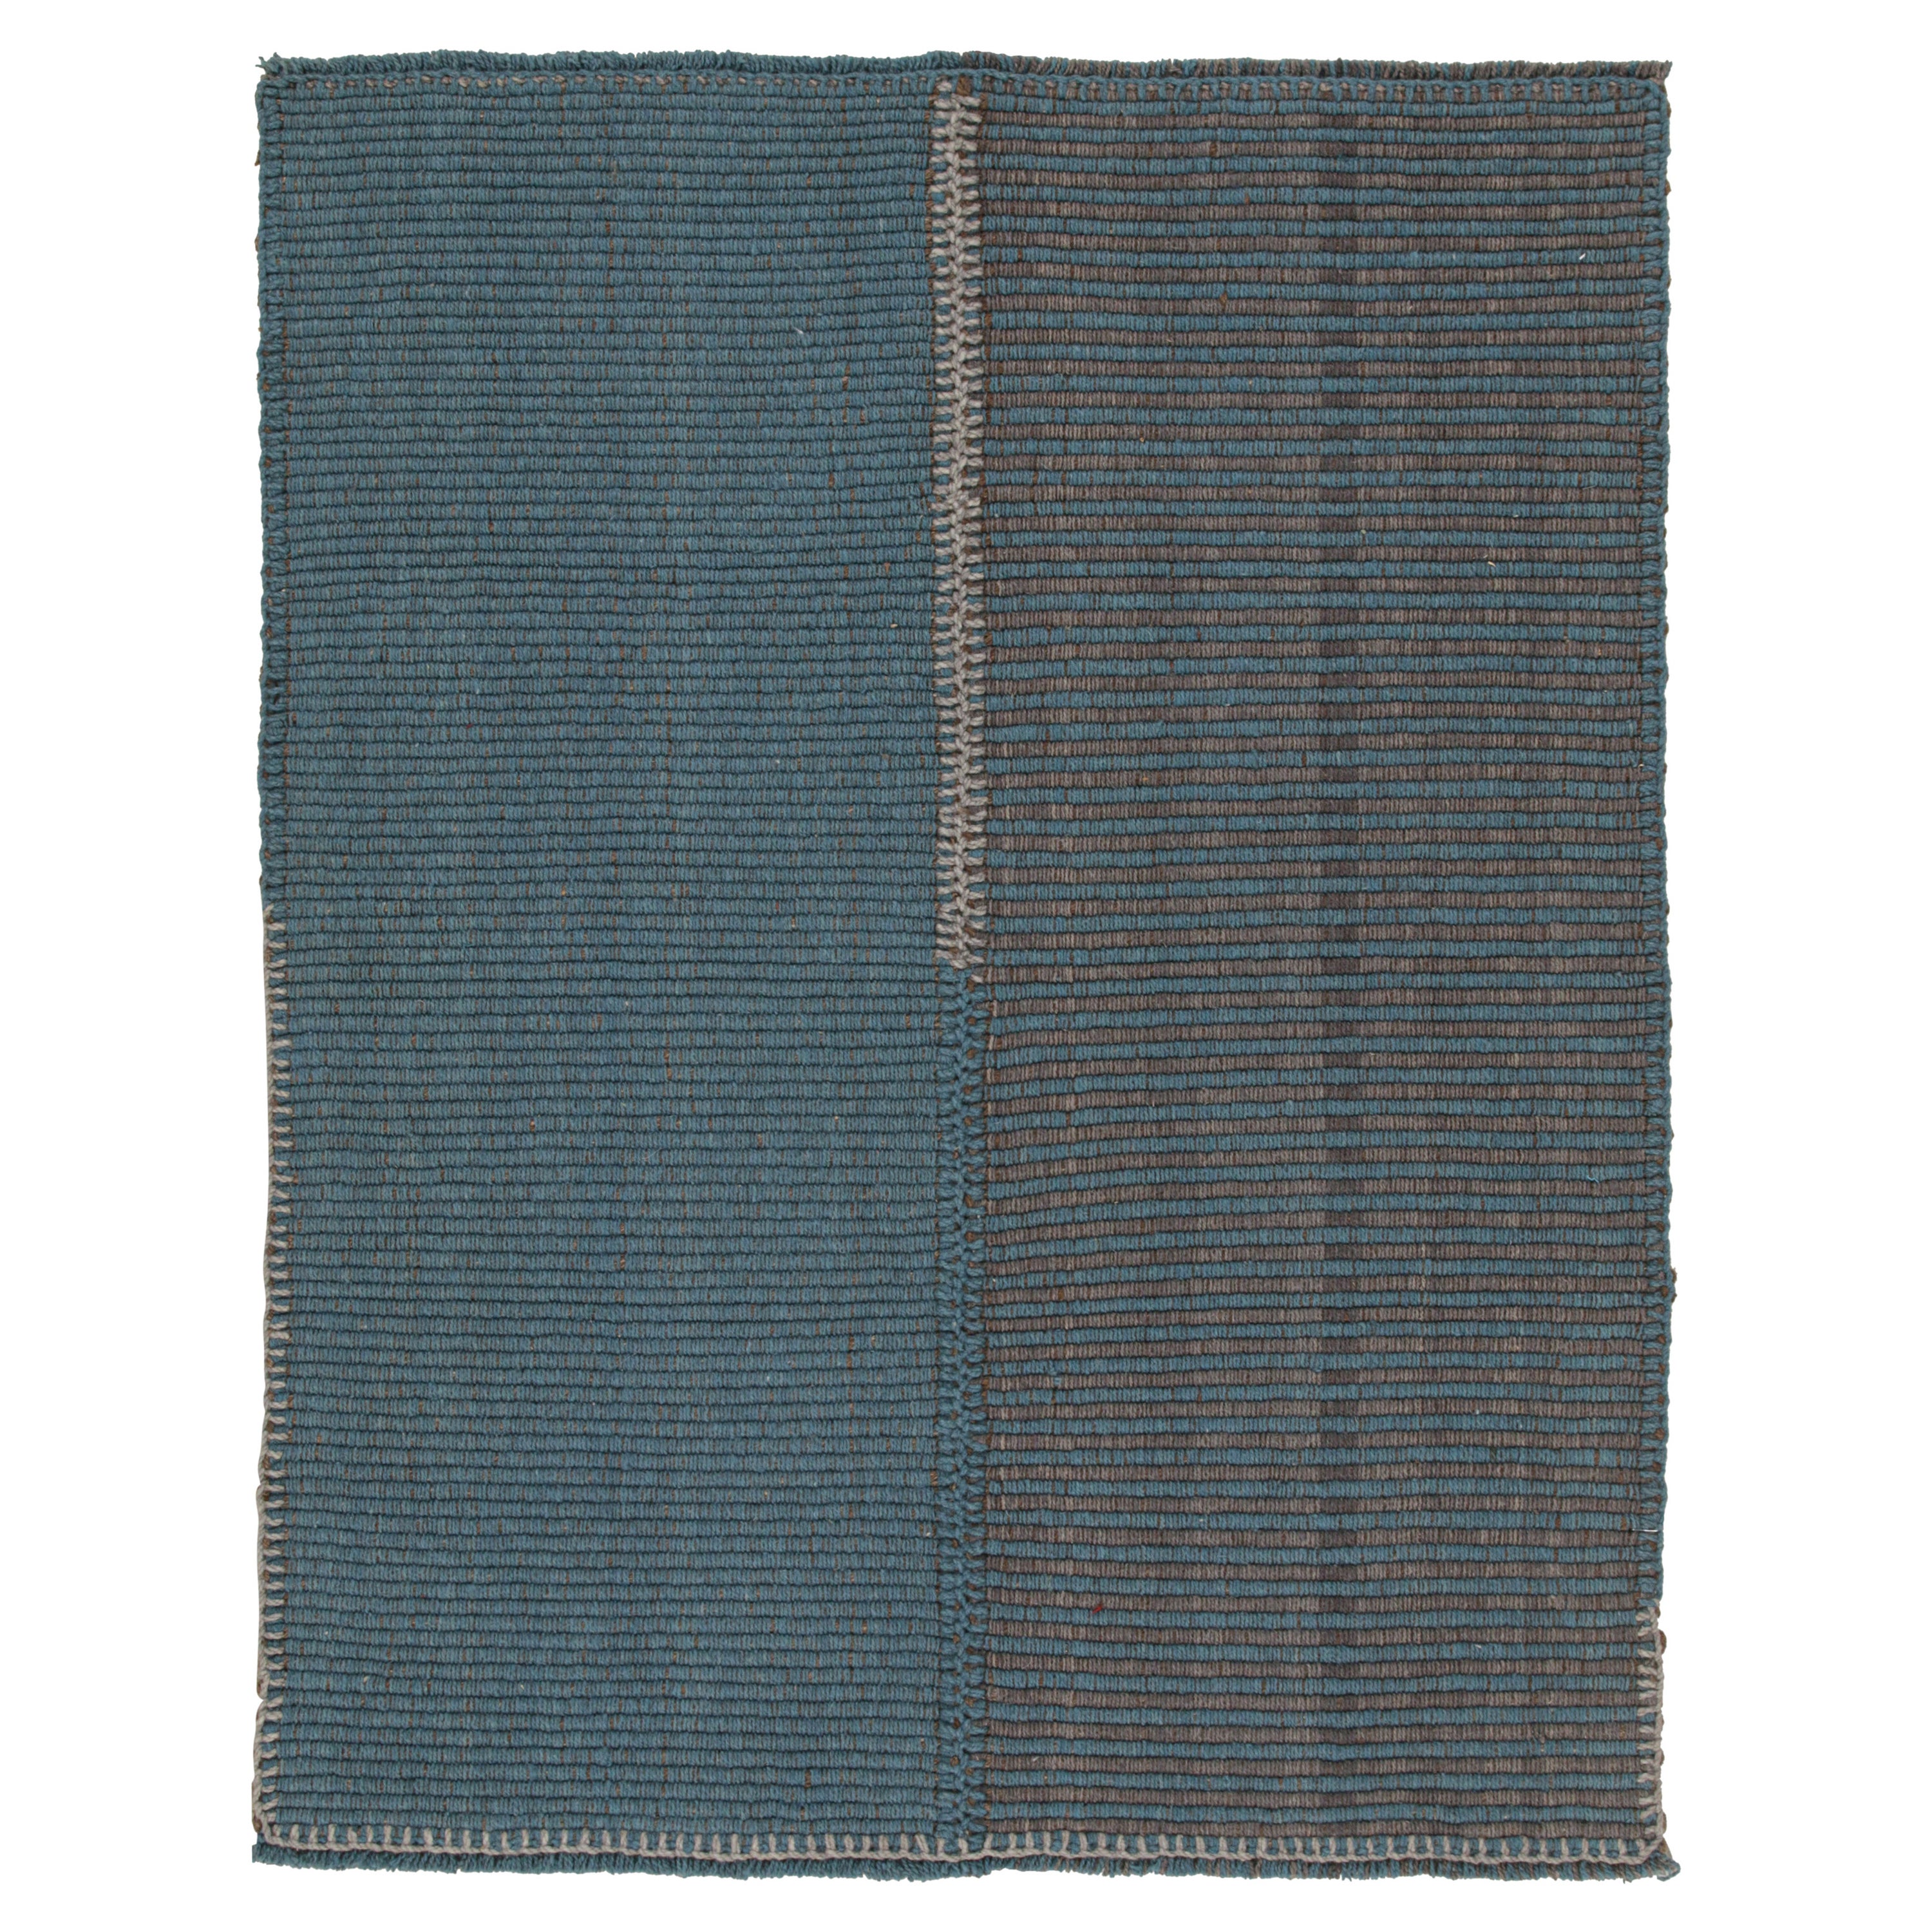 Rug & Kilim's Contemporary Kilim in blauen und grauen Streifen mit braunen Akzenten